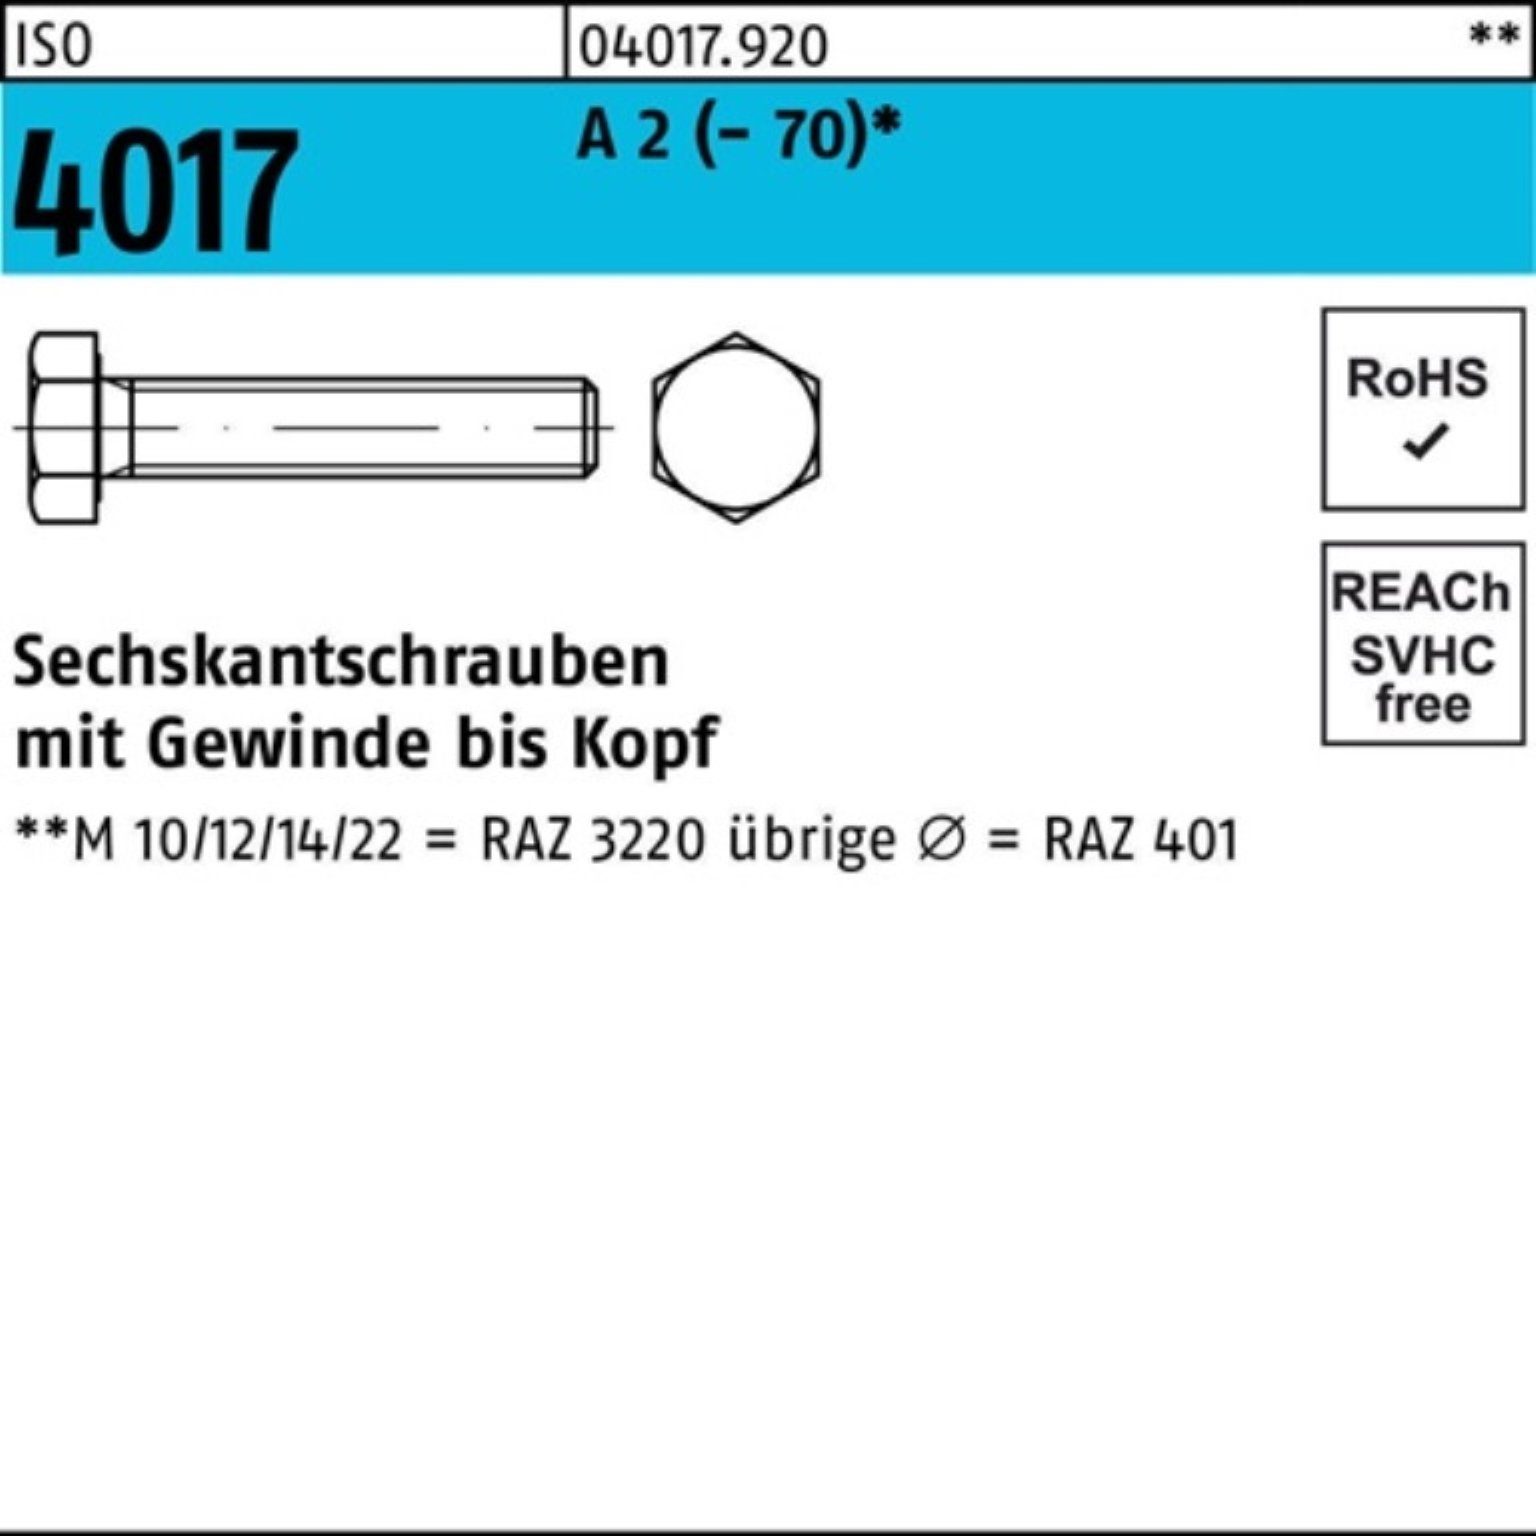 Bufab Sechskantschraube 200er Pack Sechskantschraube ISO 4017 VG M5x 45 A 2 (70) 200 Stück